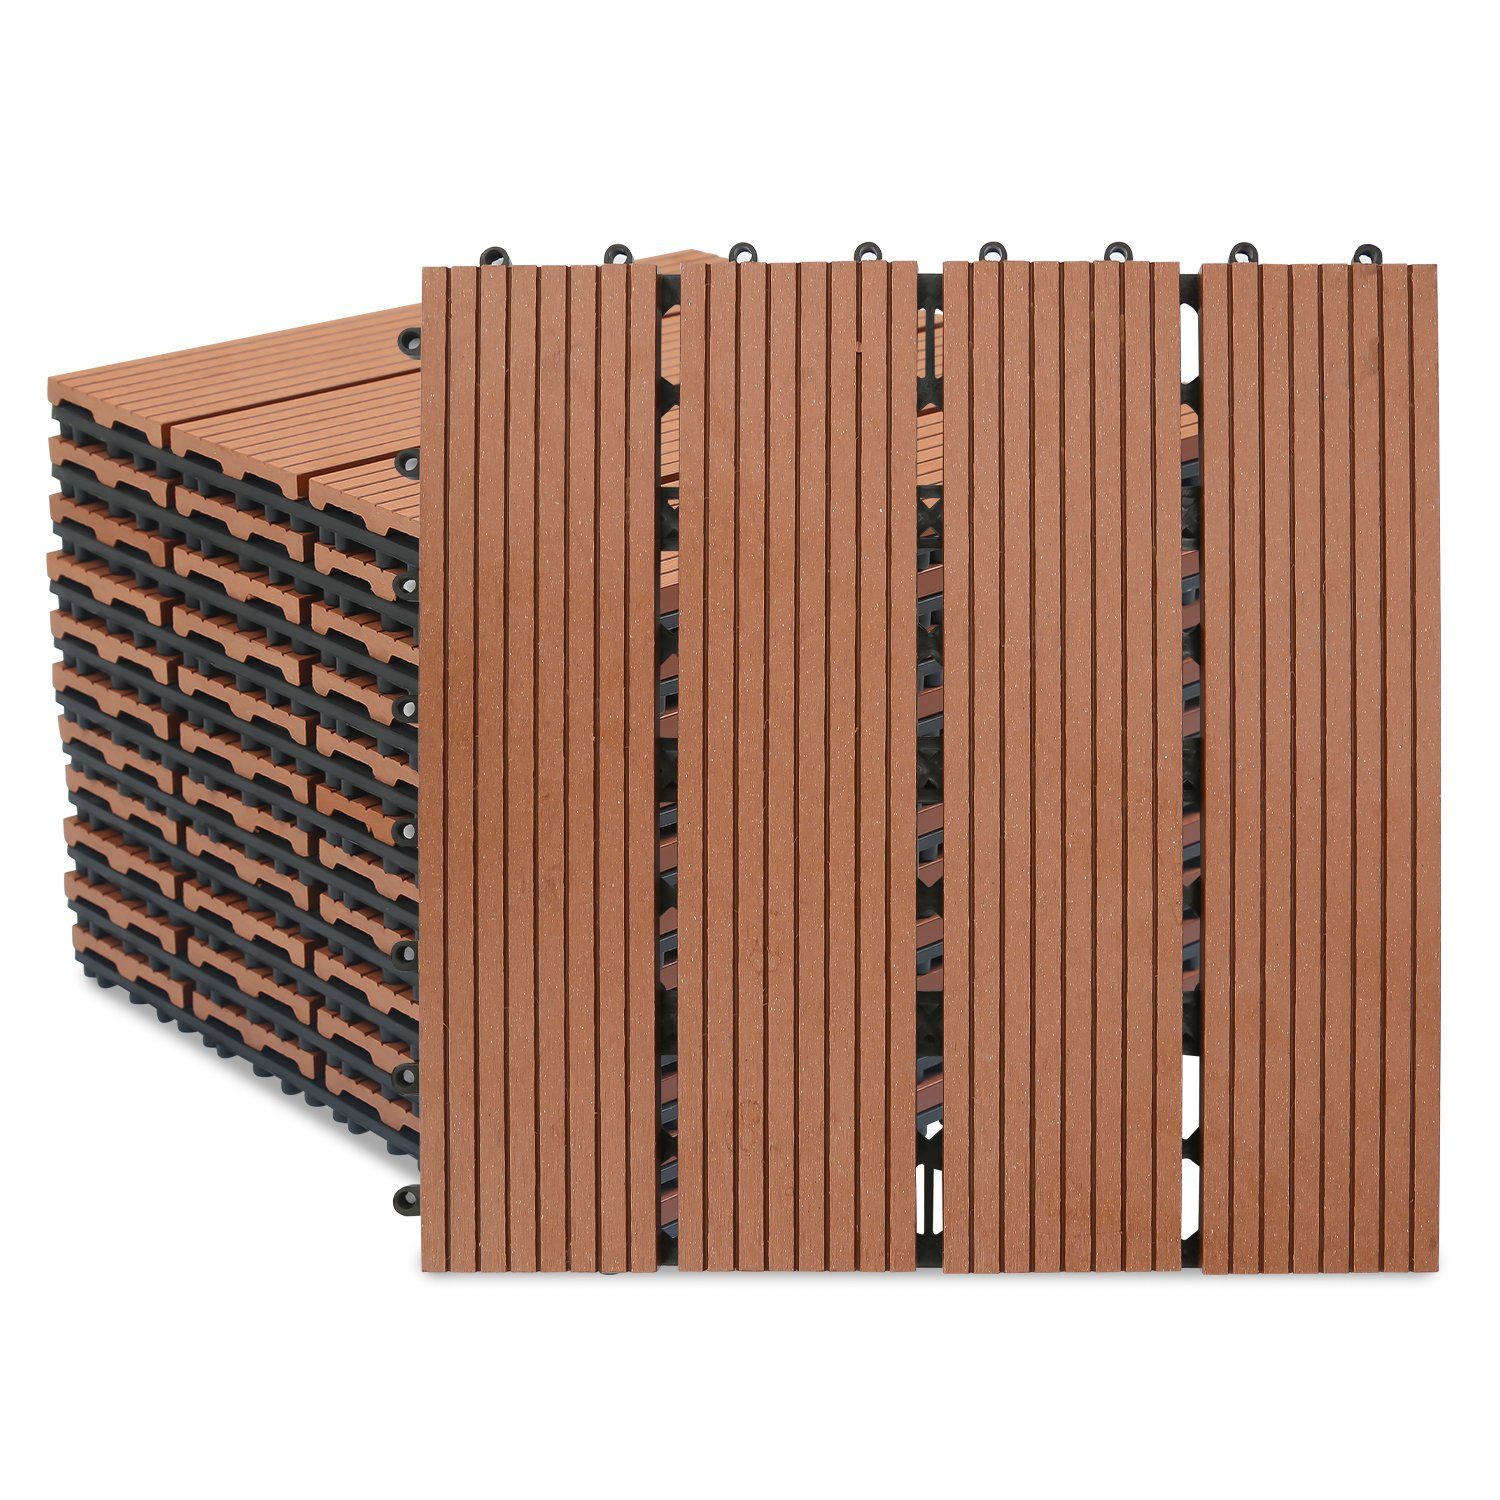 Randaco Holzfliesen WPC Fliesen 11-55 Stück 1-5m² 30x30 cm Terrassendielen Holzfliesen, klicksystem für Terrassen und Balkon